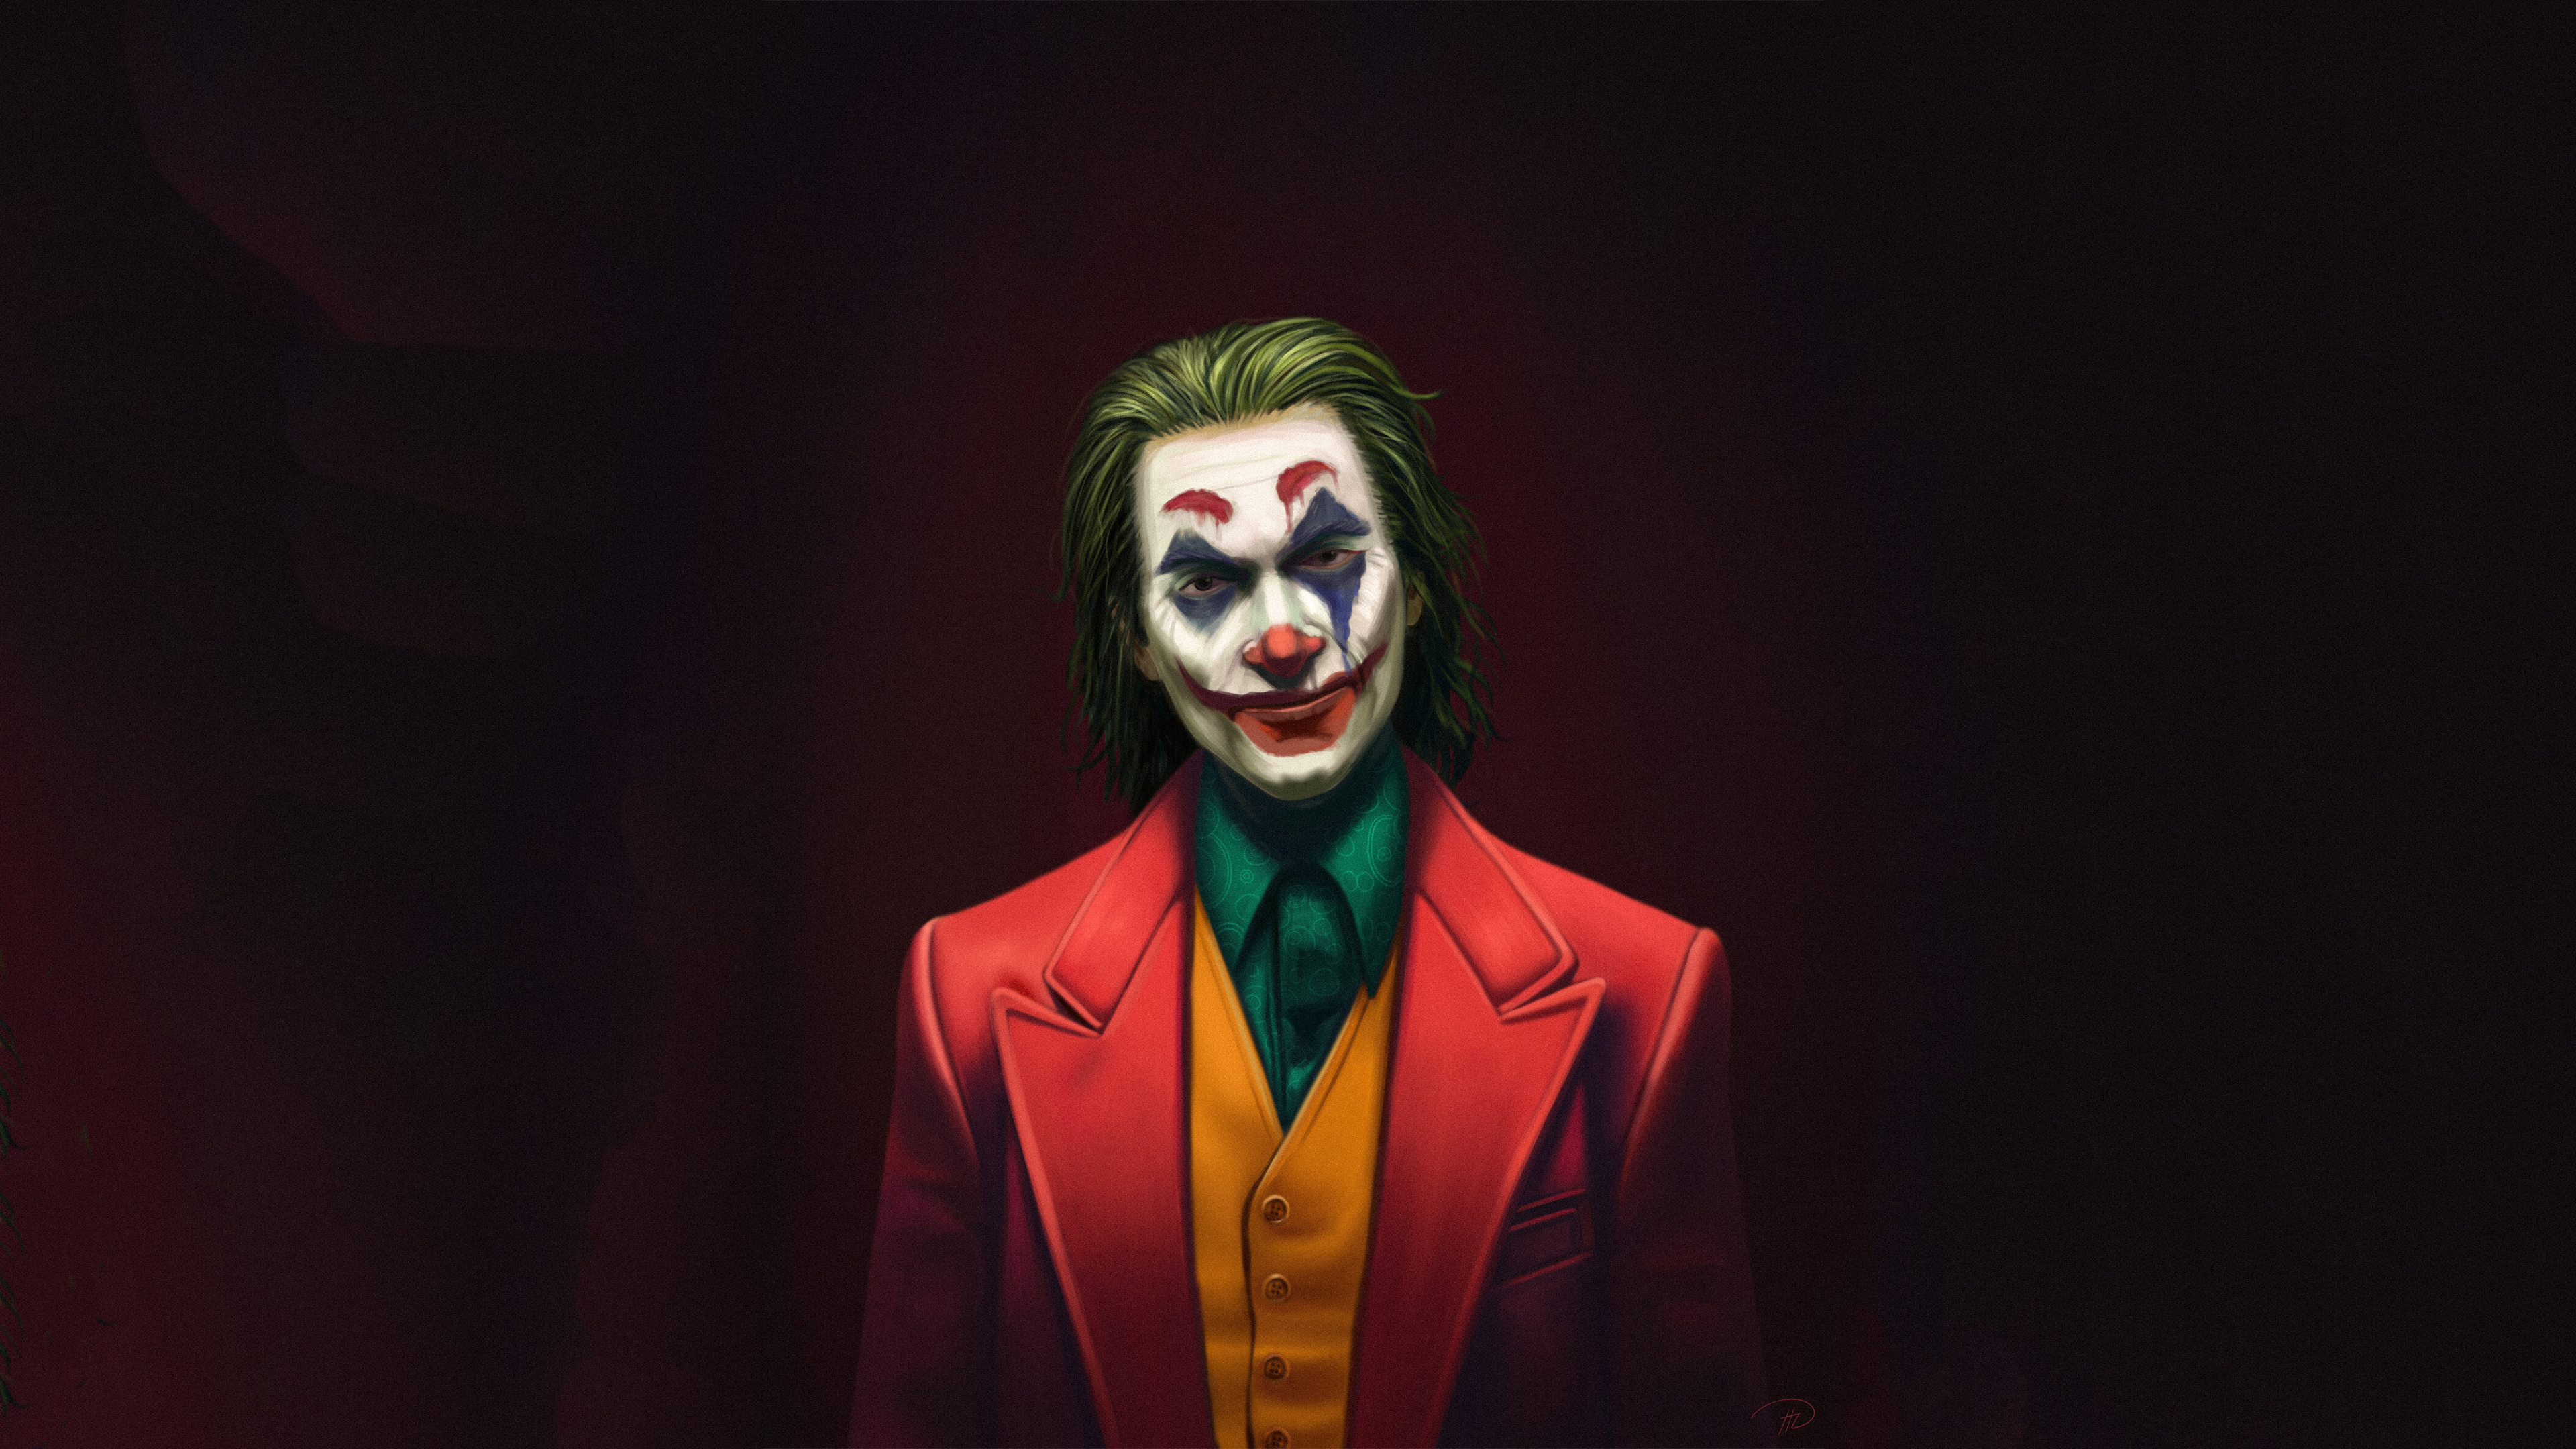 Joker Movie Wallpaper 4k For Mobile Download